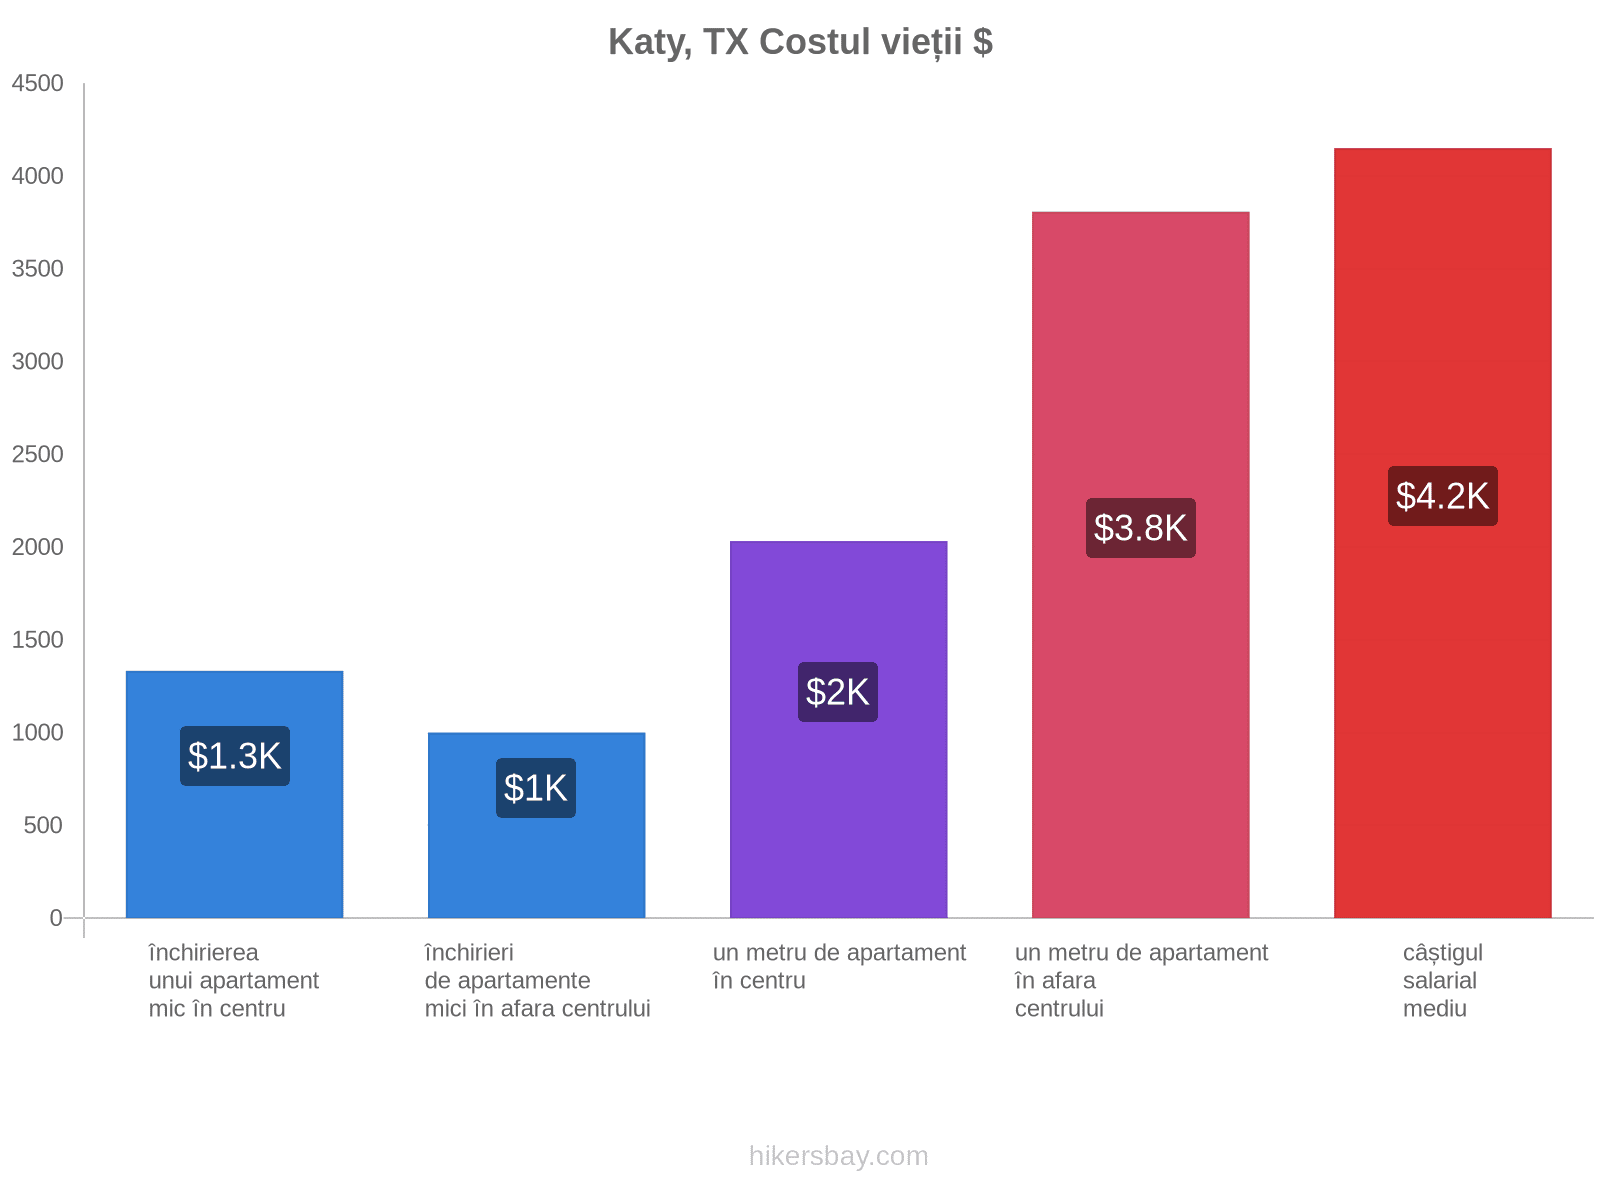 Katy, TX costul vieții hikersbay.com